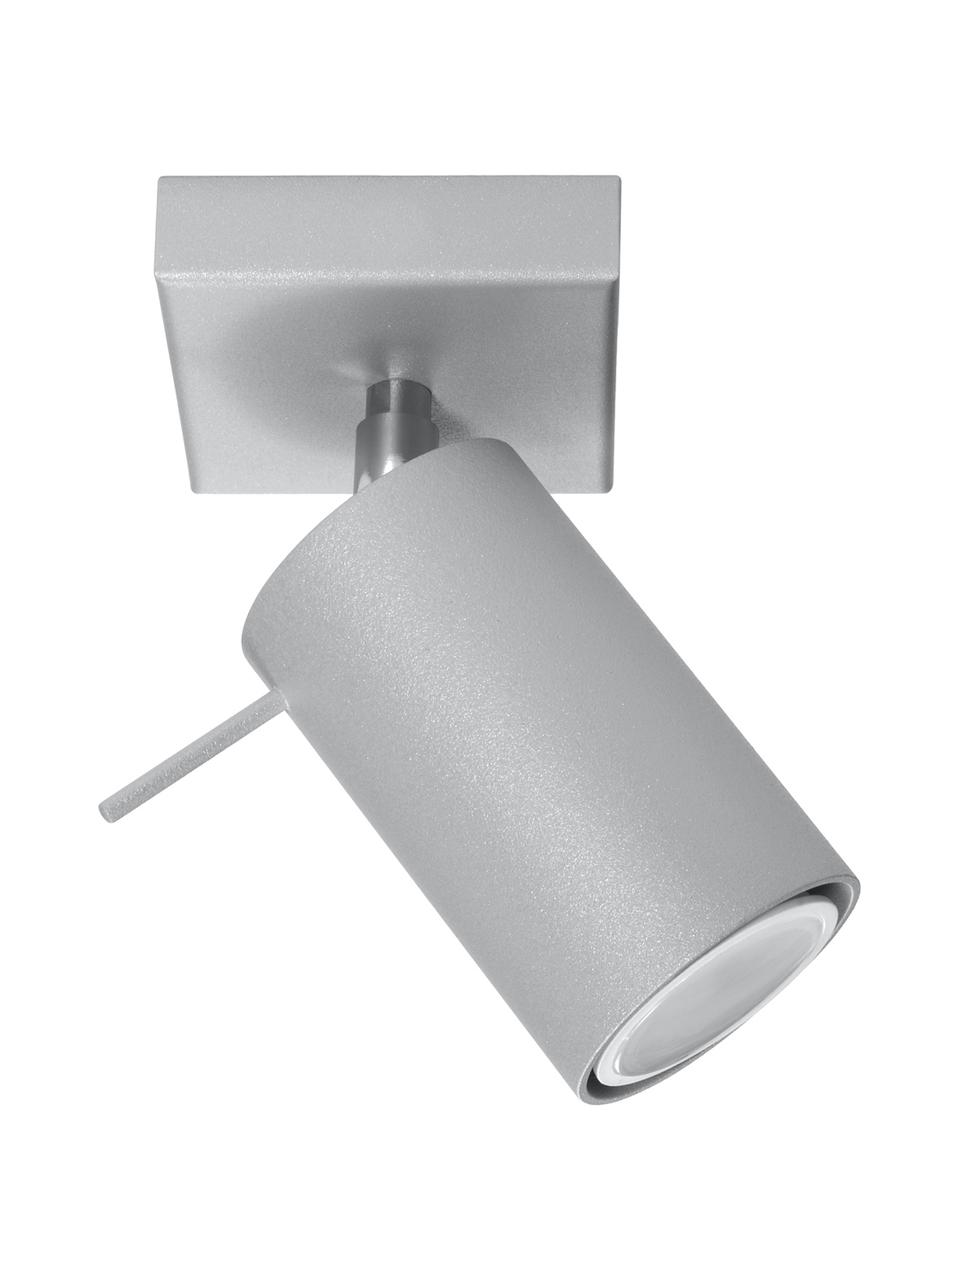 Verstellbarer Wand- und Deckenstrahler Etna in Grau, Lampenschirm: Stahl, lackiert, Grau, B 8 x T 15 cm